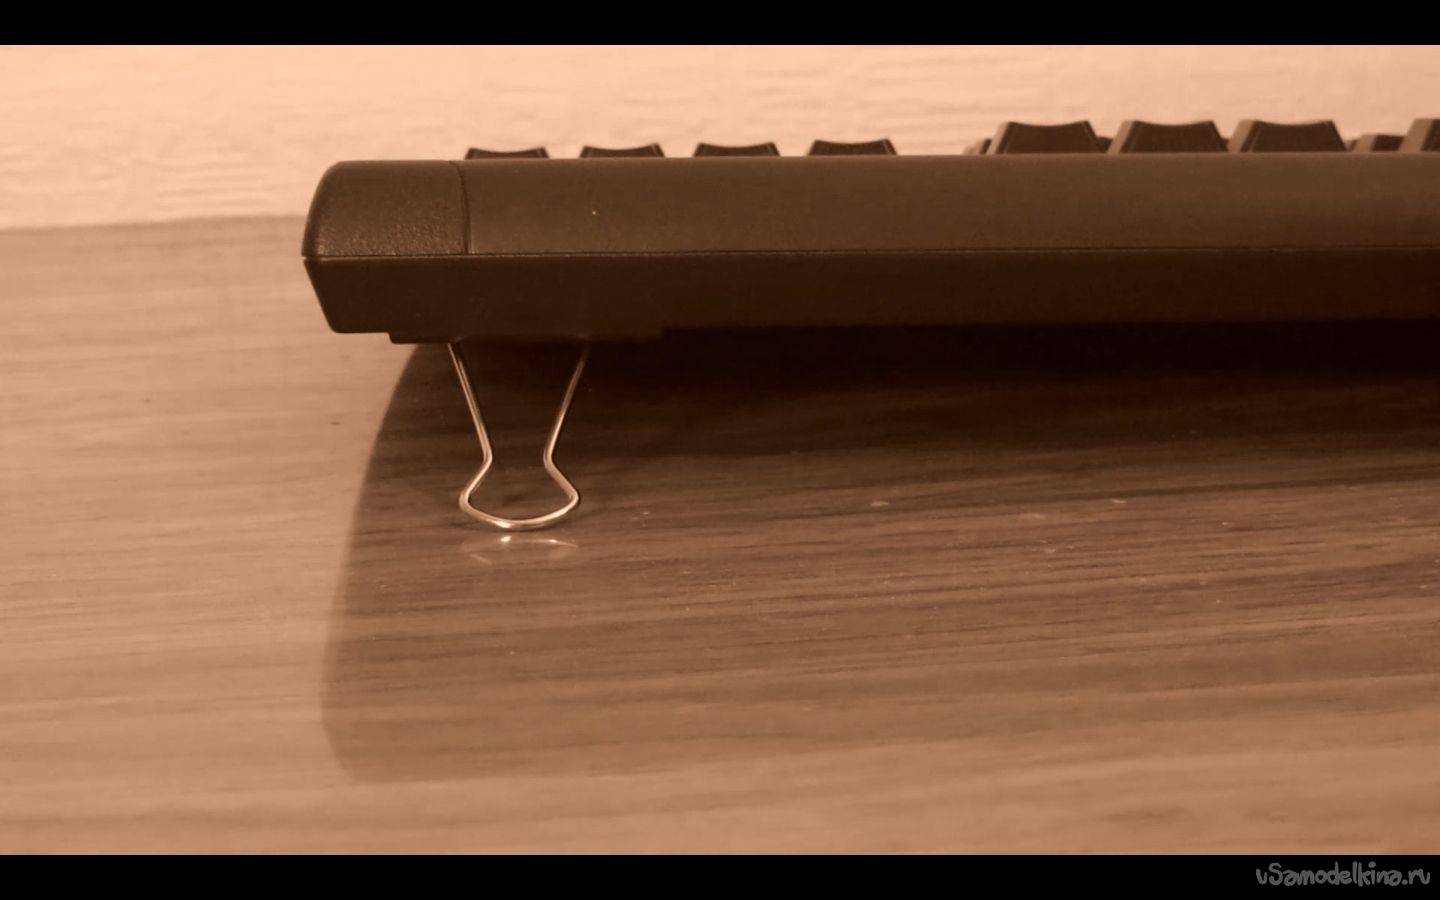 Как быстро научиться печатать вслепую на клавиатуре? - блог викиум